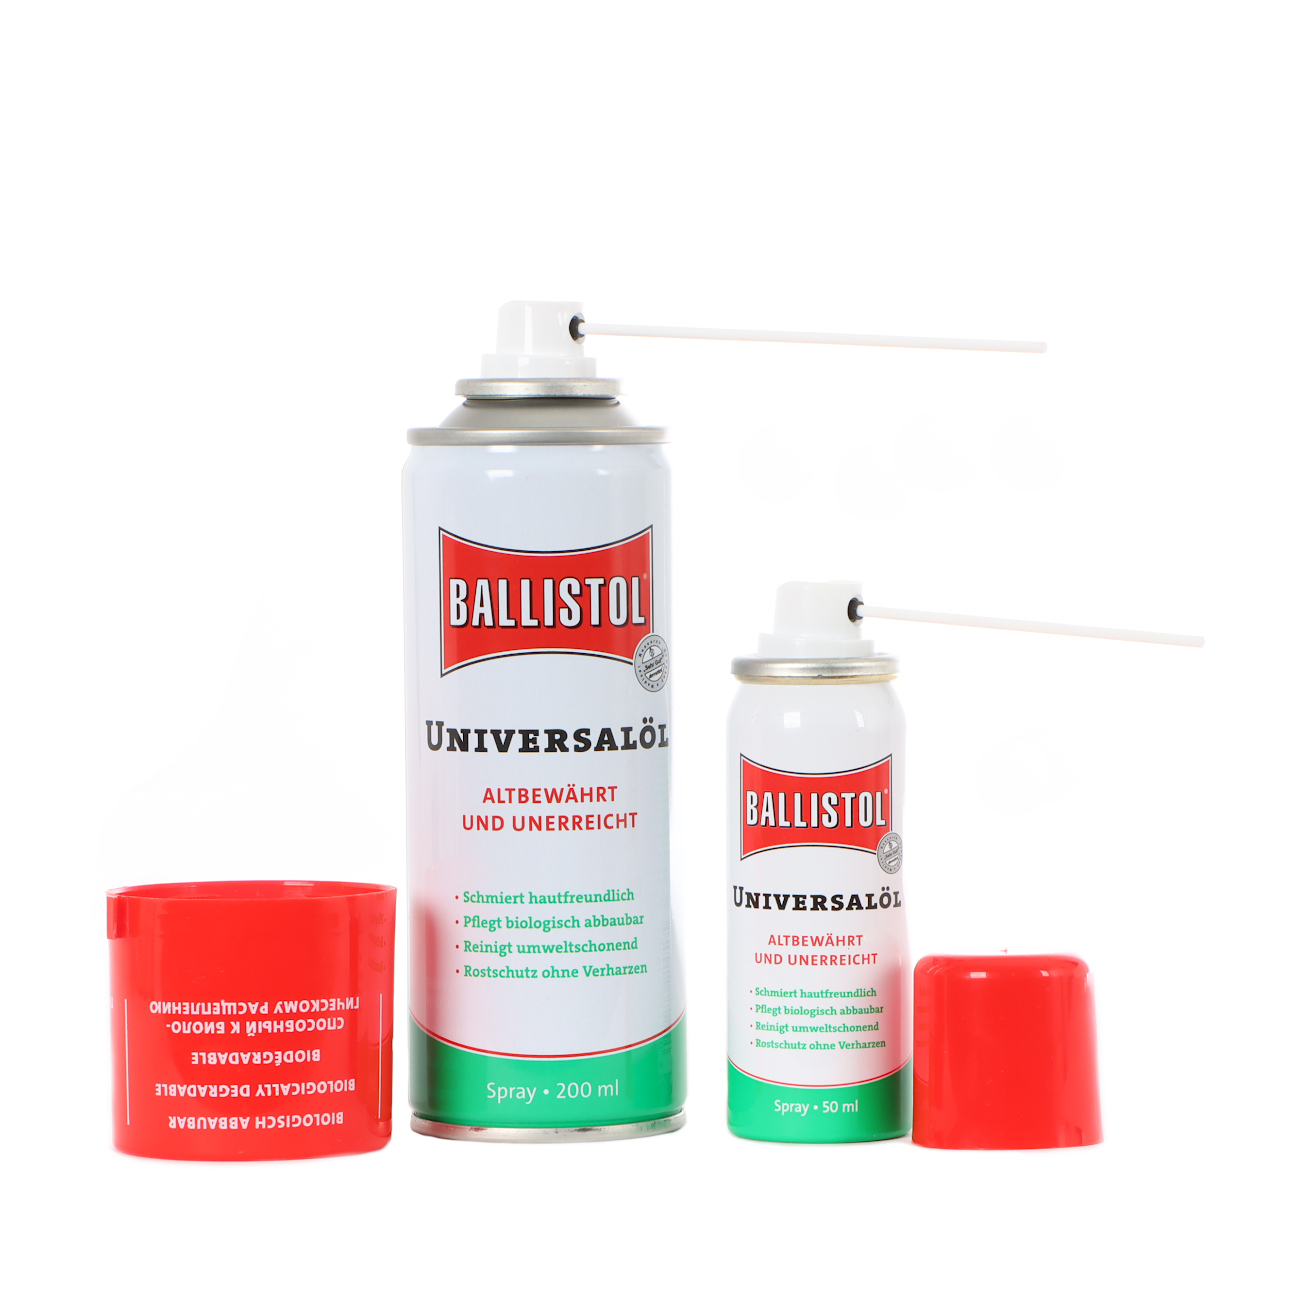 Ballistol Universal Oil, Other, Tools